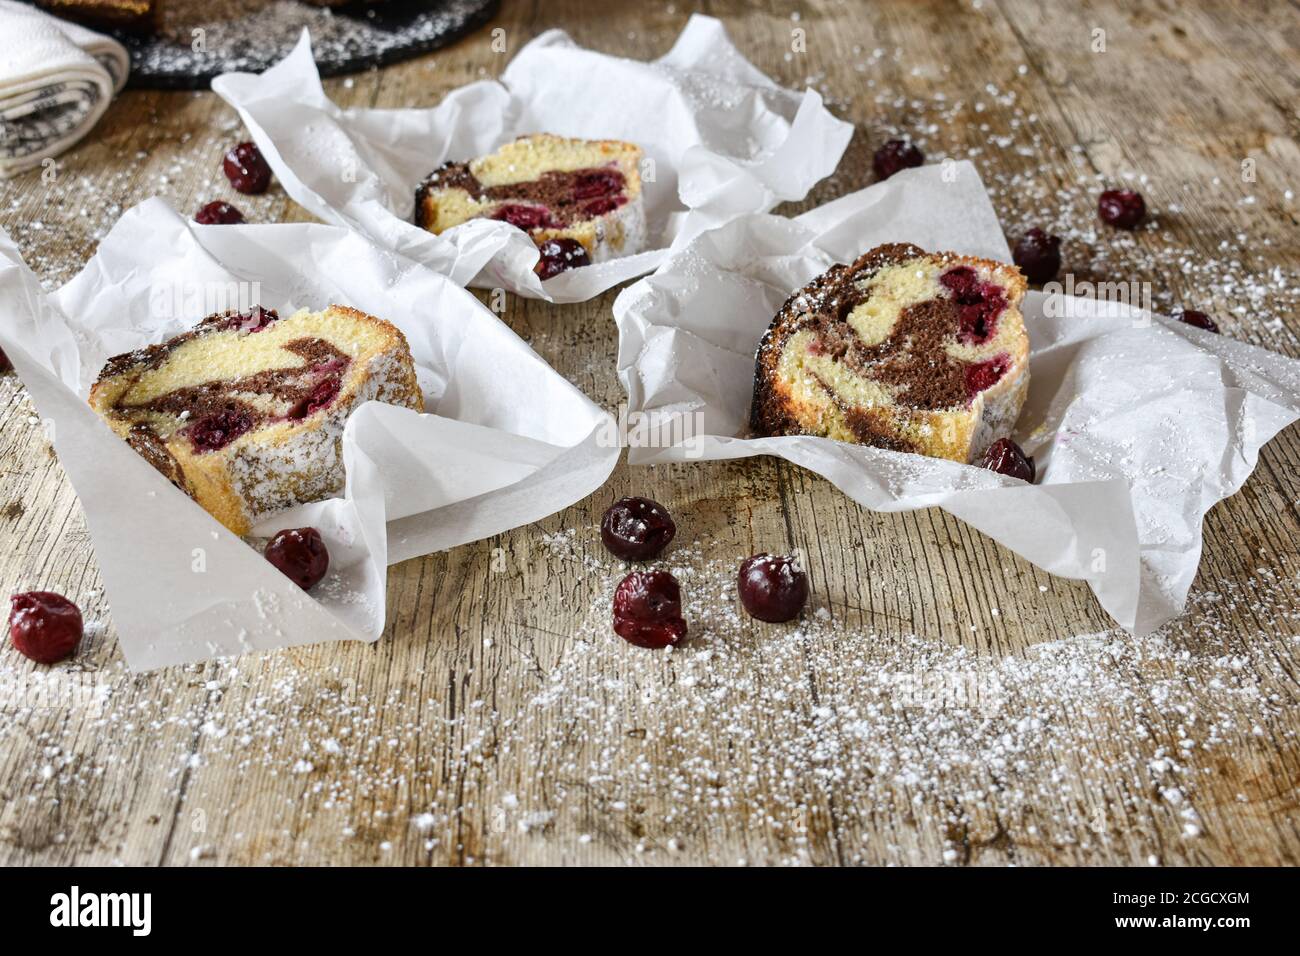 rodajas de pastel de mármol fresco y delicioso en papel para hornear - servido como comida callejera Foto de stock